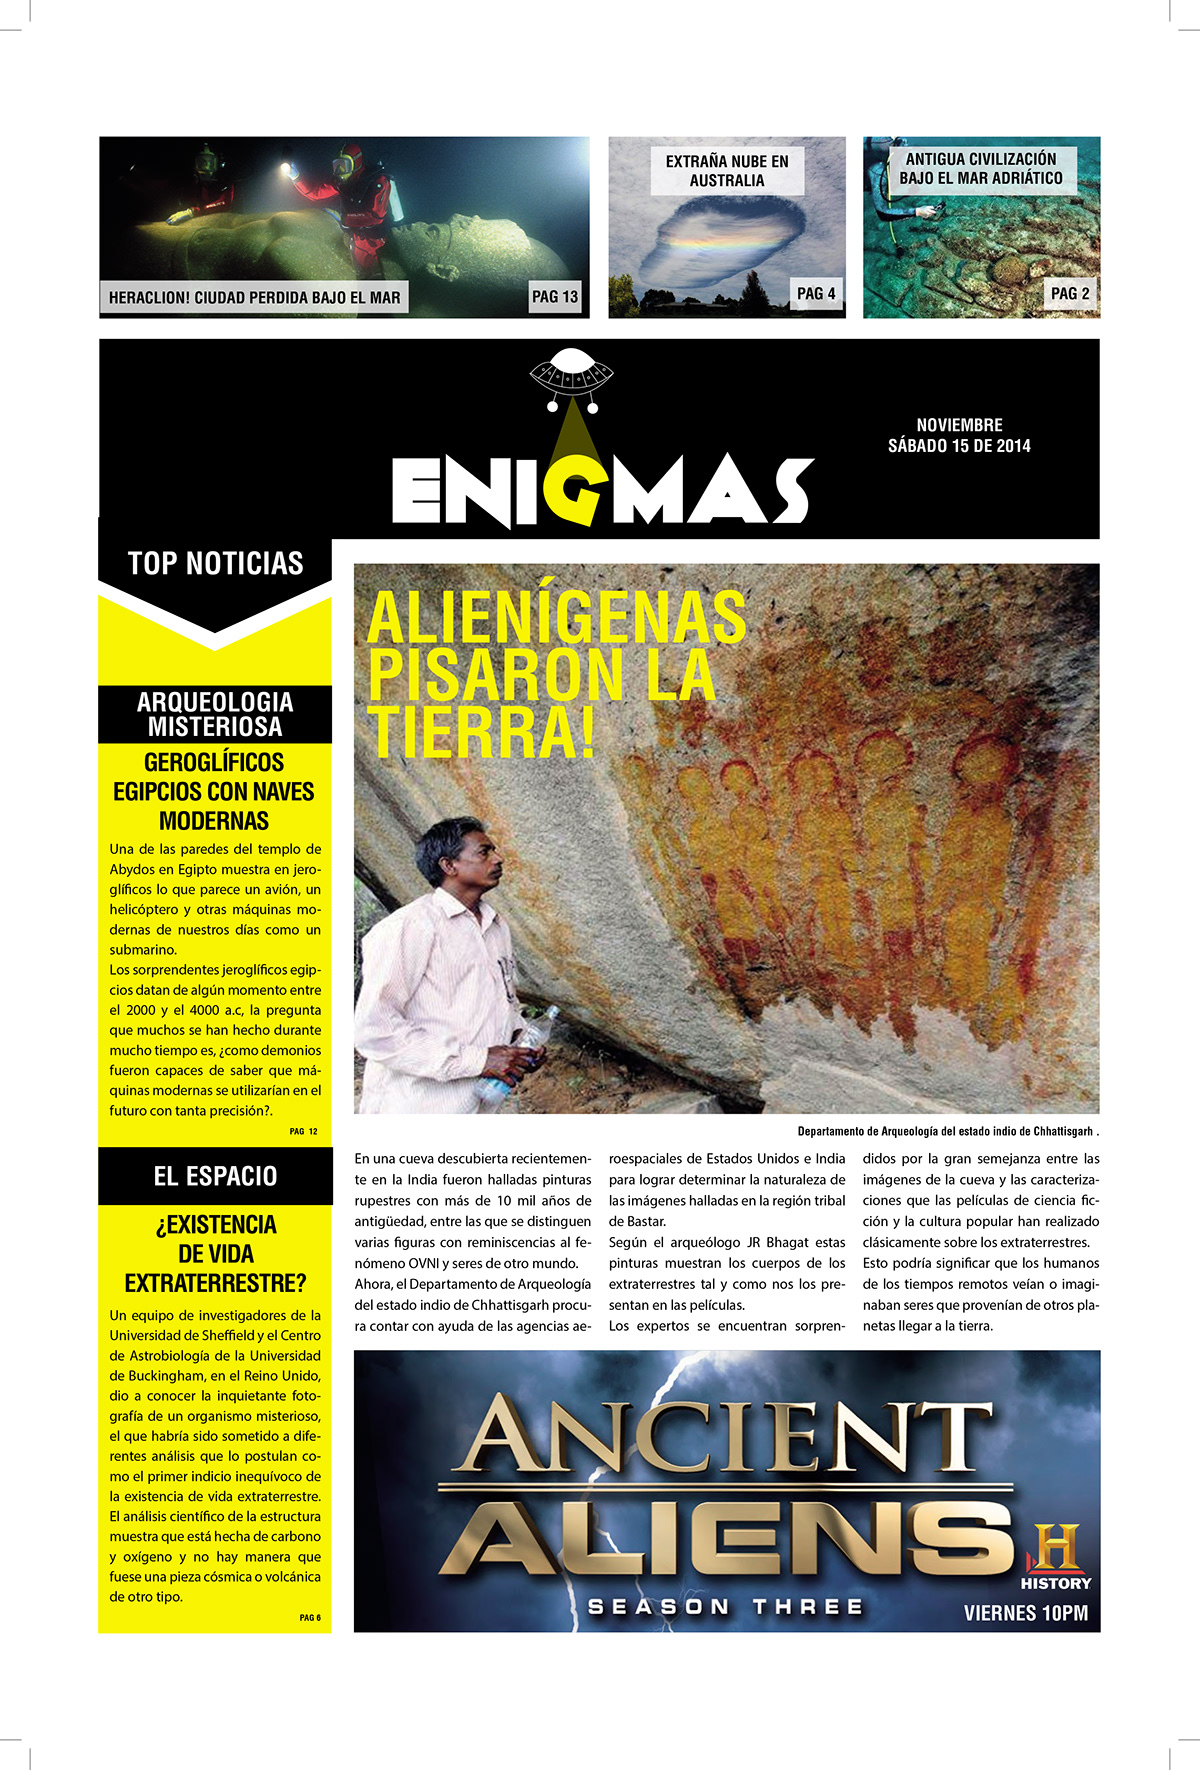 Enigmas newspaper OVNI